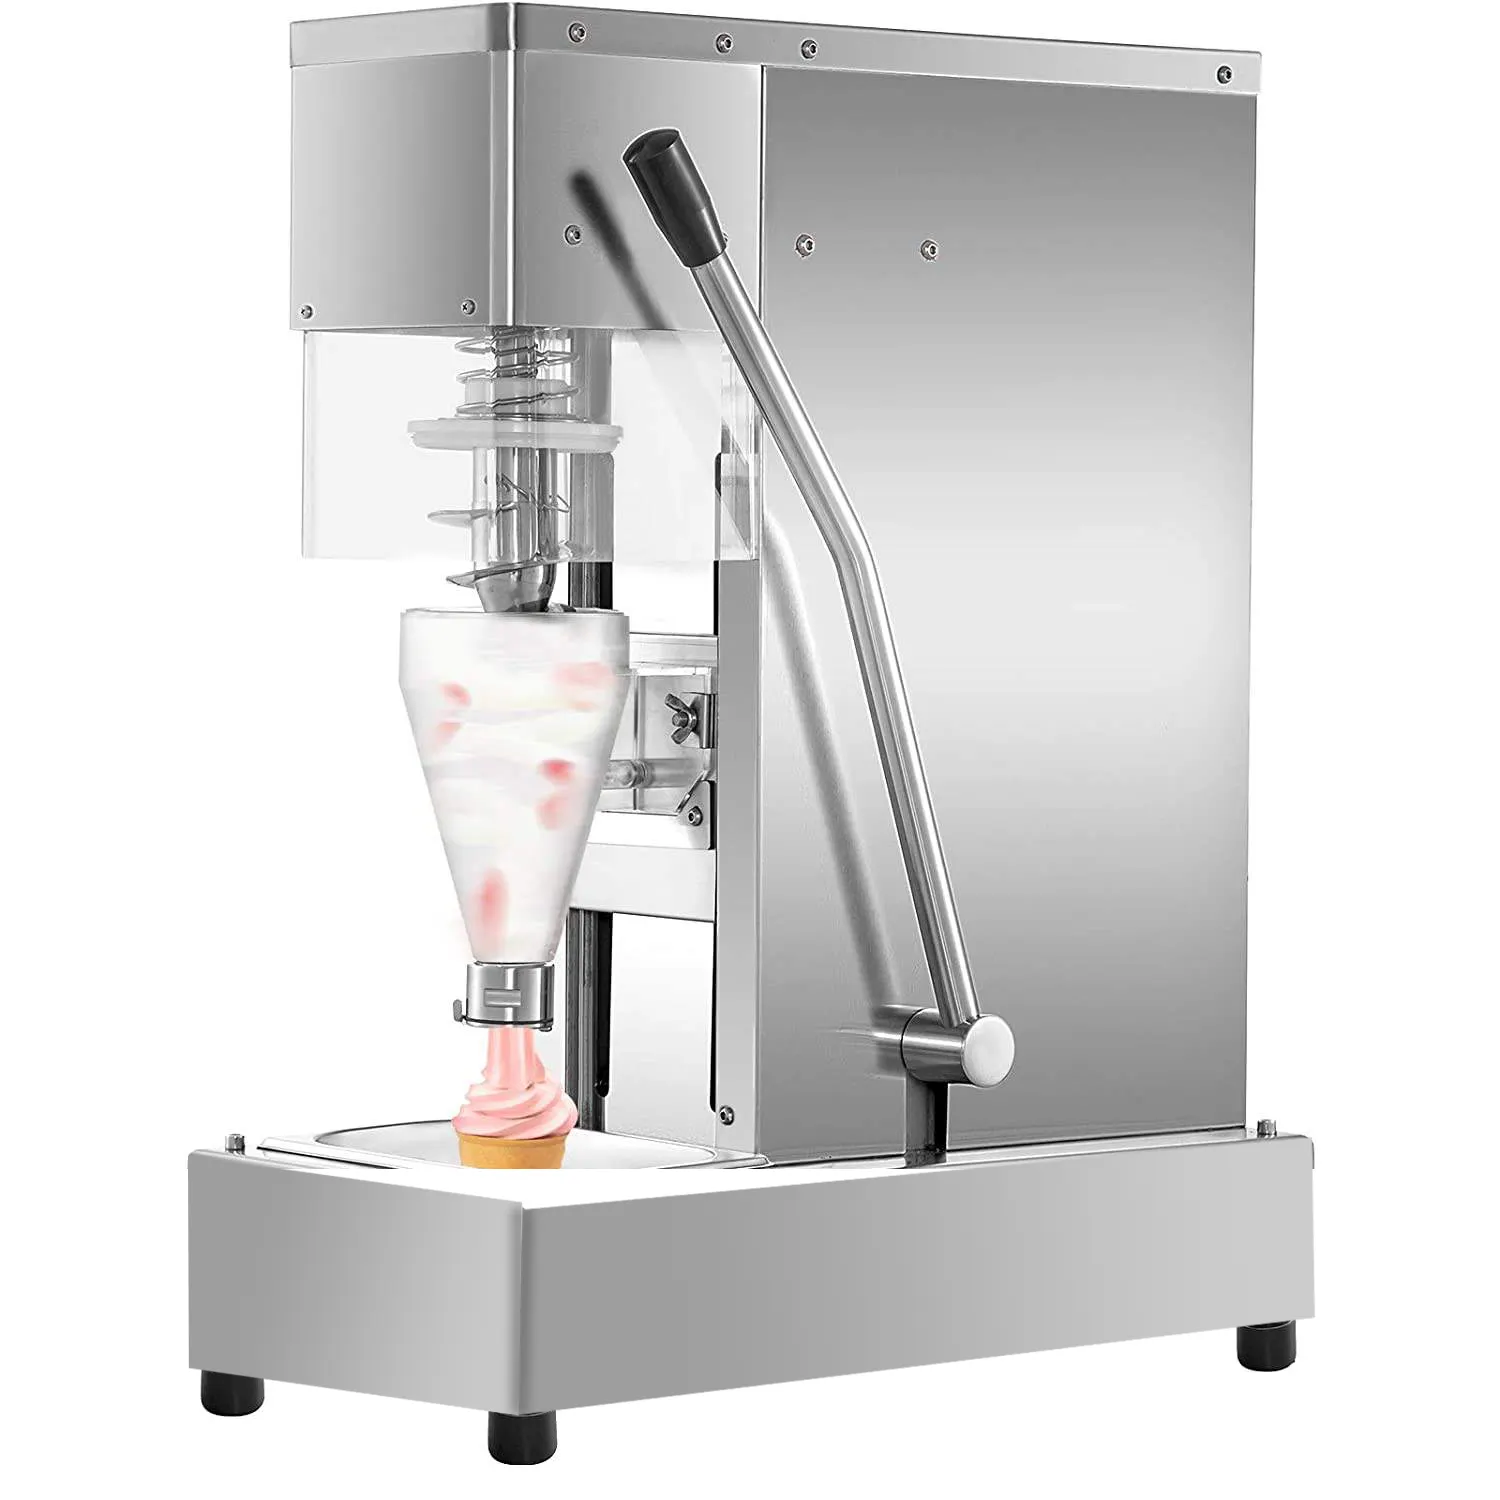 CE Wirbel bohrer Eis mischer Maschine Wirbel bohrer Gelato gefrorener Joghurt echte Früchte Eis mixer